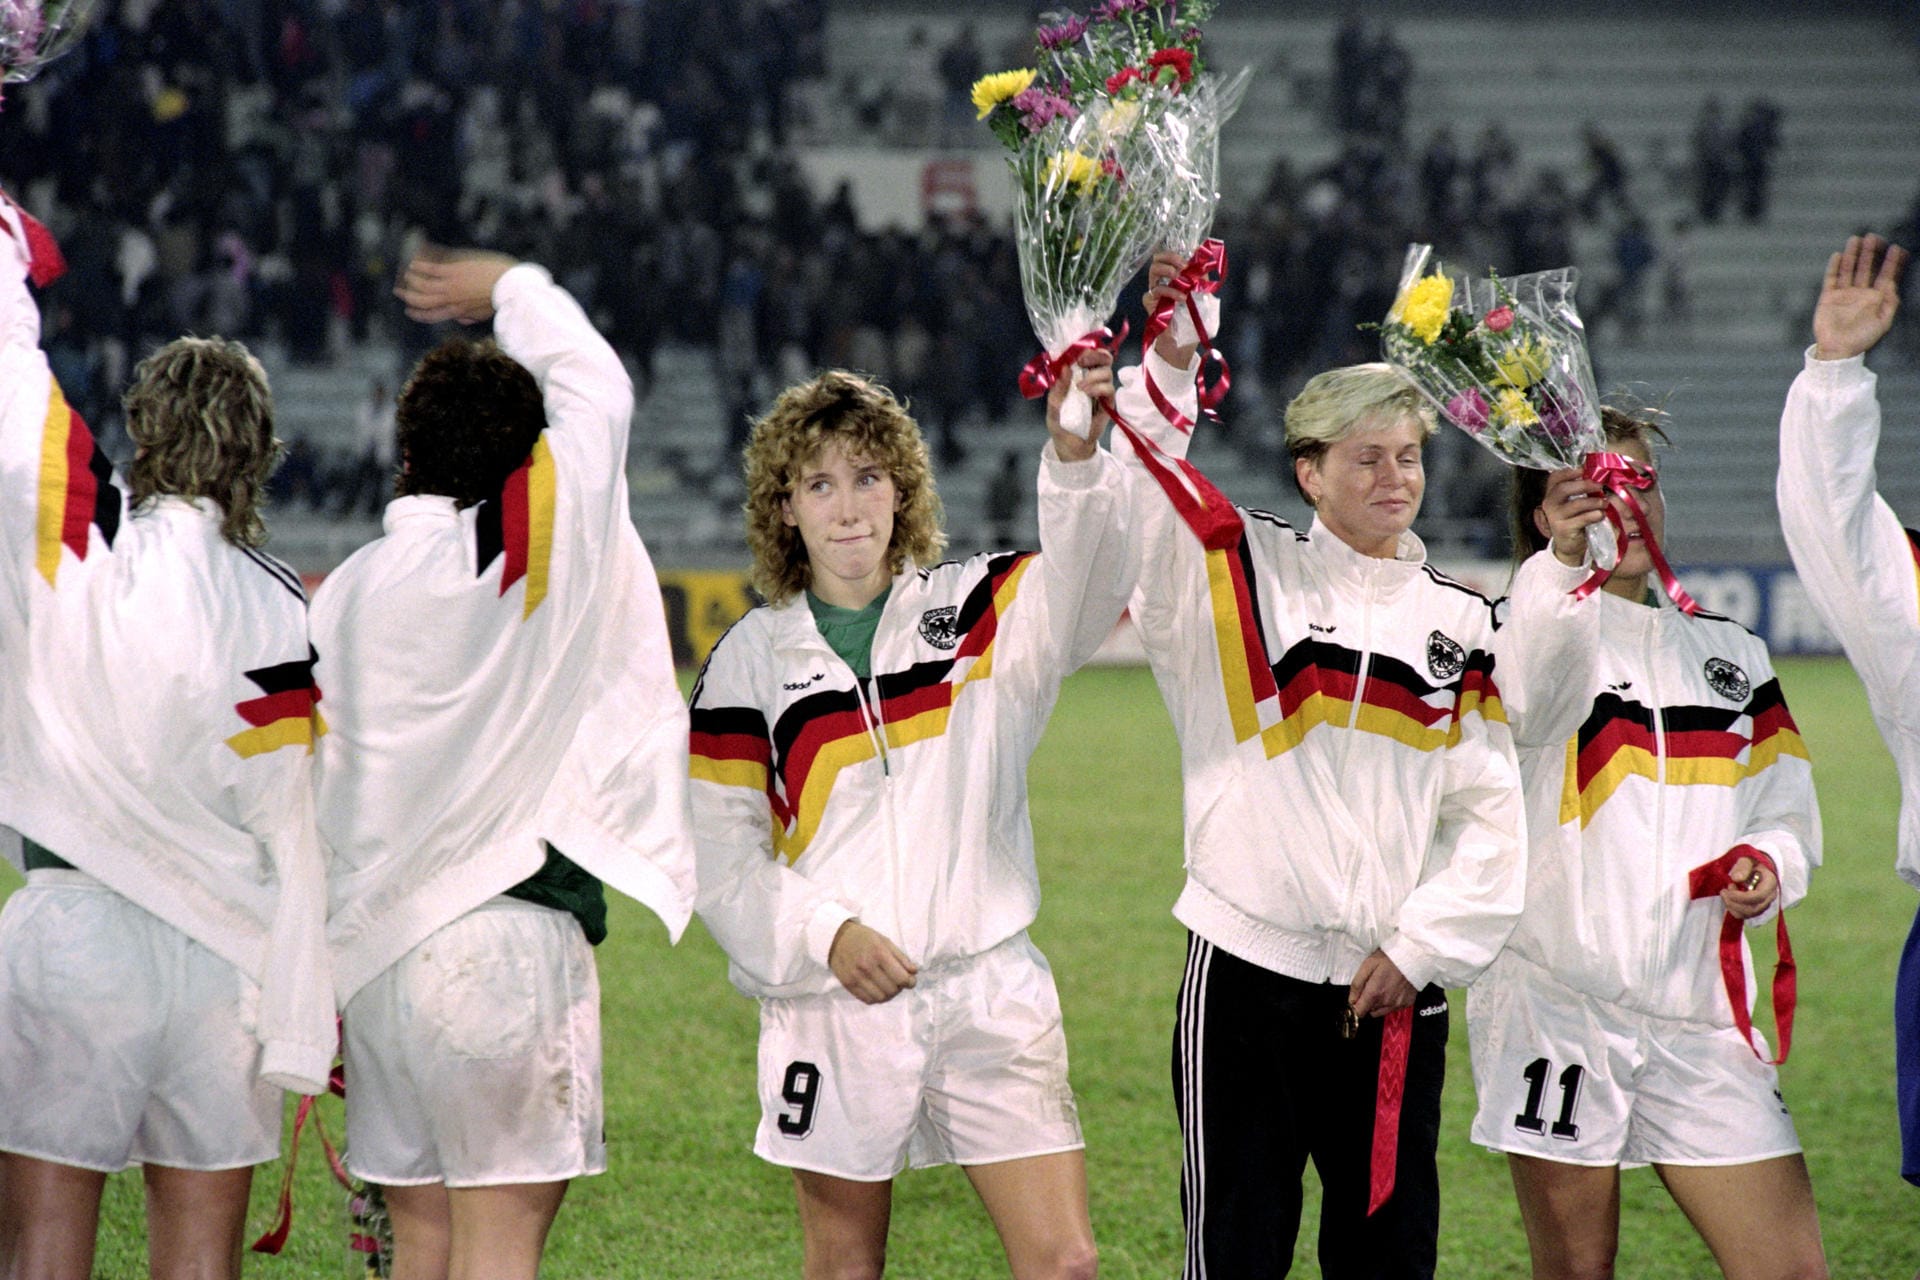 Bei der ersten Frauen-WM im Jahre 1991 war Heidi Mohr (mit der Nummer 9) mit dabei. Deutschland wurde Vierter, der Titel ging an die USA.